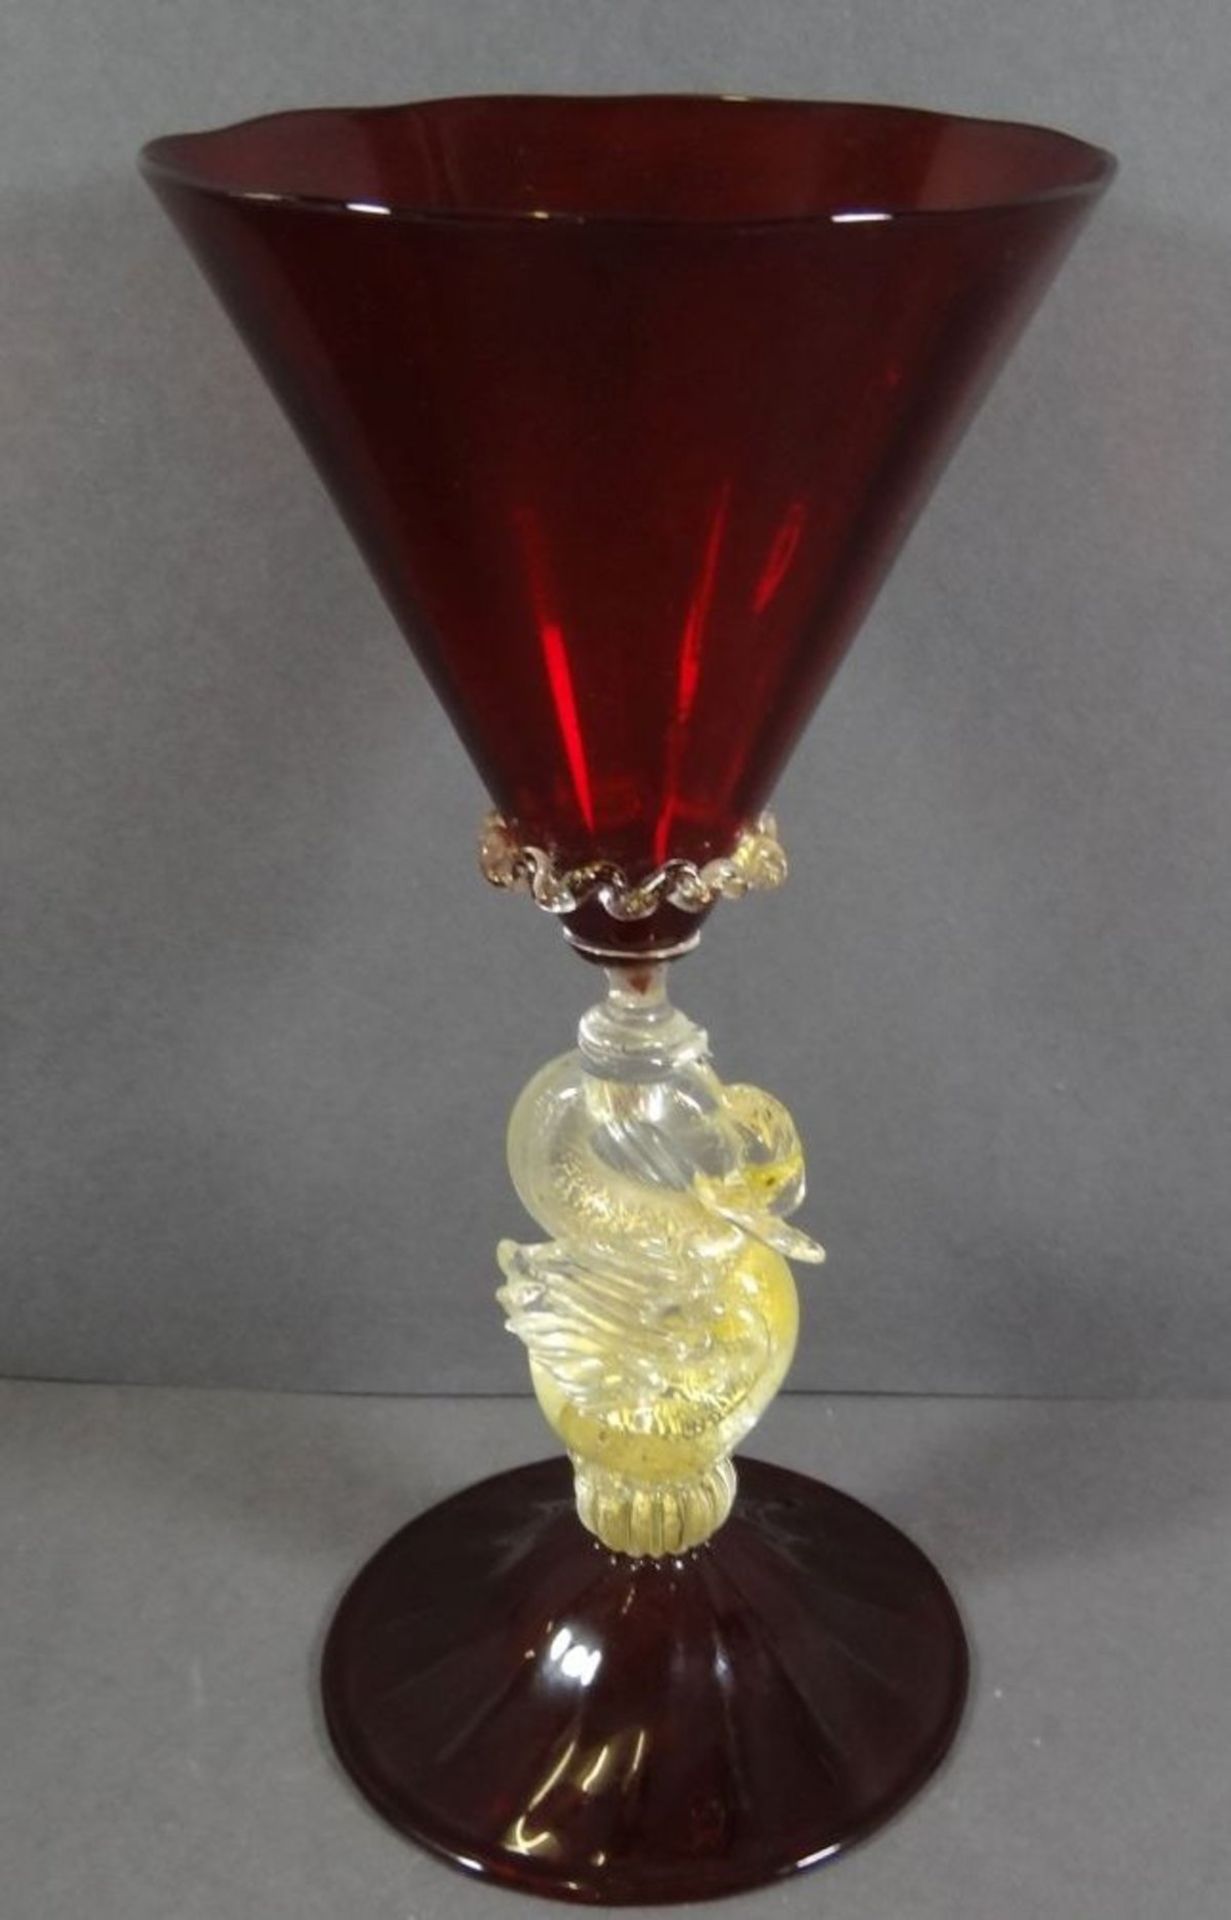 gr. Pokal "Murano" rotes Glas, Griff als Schwan, klar mit Goldflitter, H-21 cm - Bild 4 aus 6